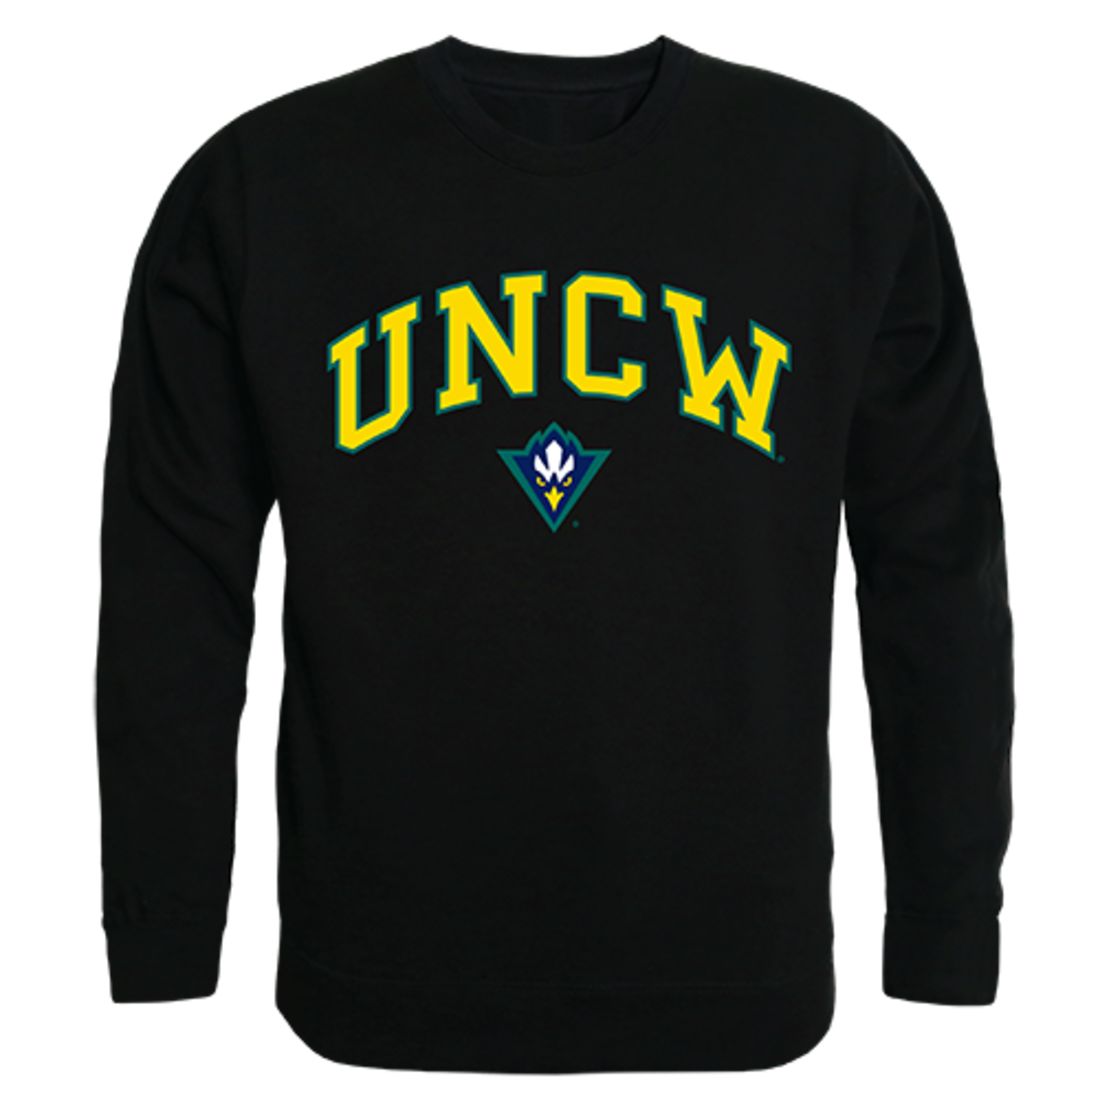 UNCW University of North Carolina Wilmington Campus Crewneck Pullover Sweatshirt Sweater Black-Campus-Wardrobe